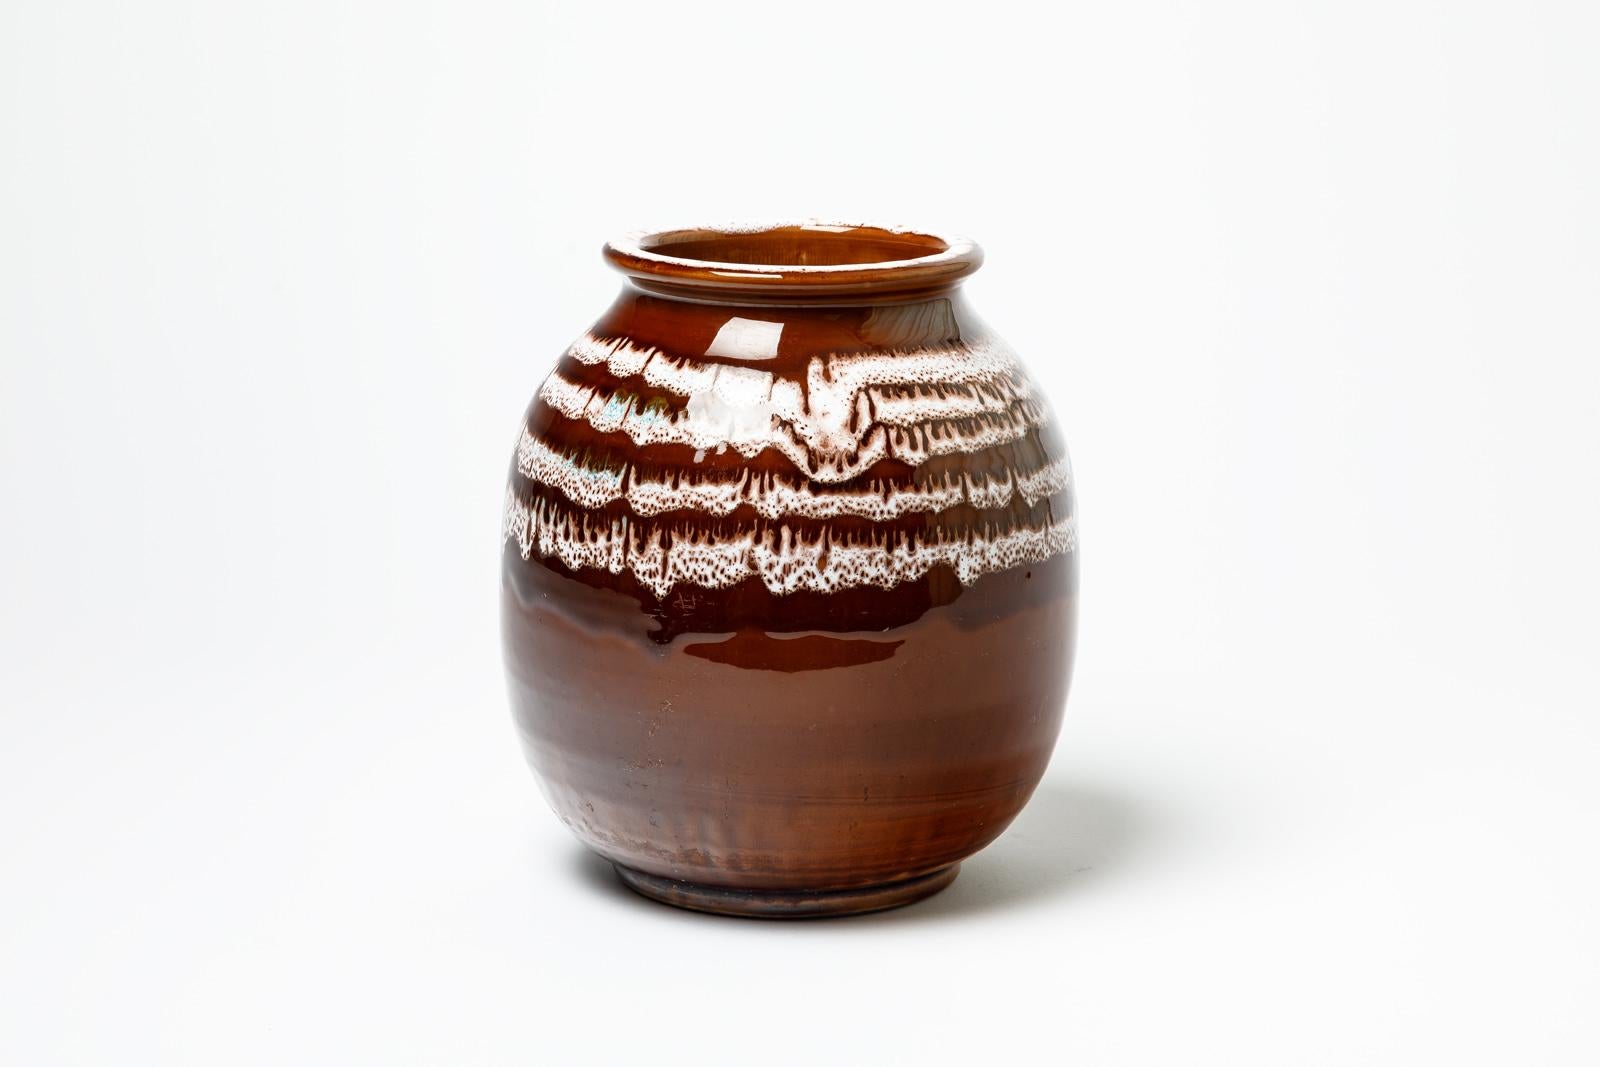 Braun und weiß  Vase aus glasiertem Steingut von Jean Besnard.
Künstlersignatur unter dem Sockel. 
Um 1930.
H : 8,7' x 6,3' Zoll.
